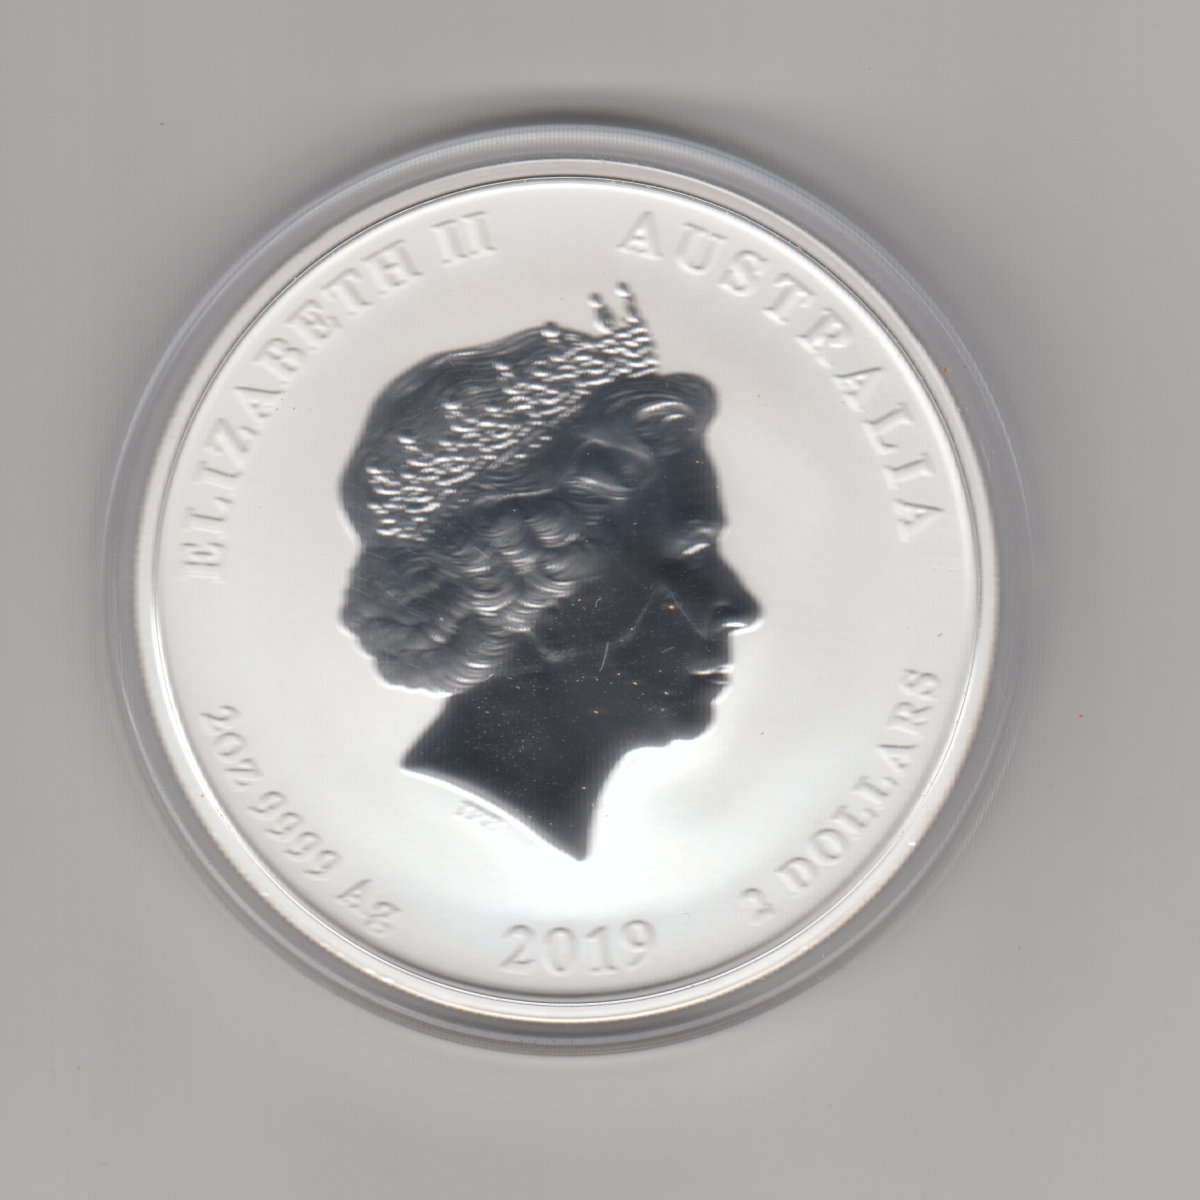  Australien, 2 Dollar 2019, Lunar II Schwein, 2 unzen oz Silber   